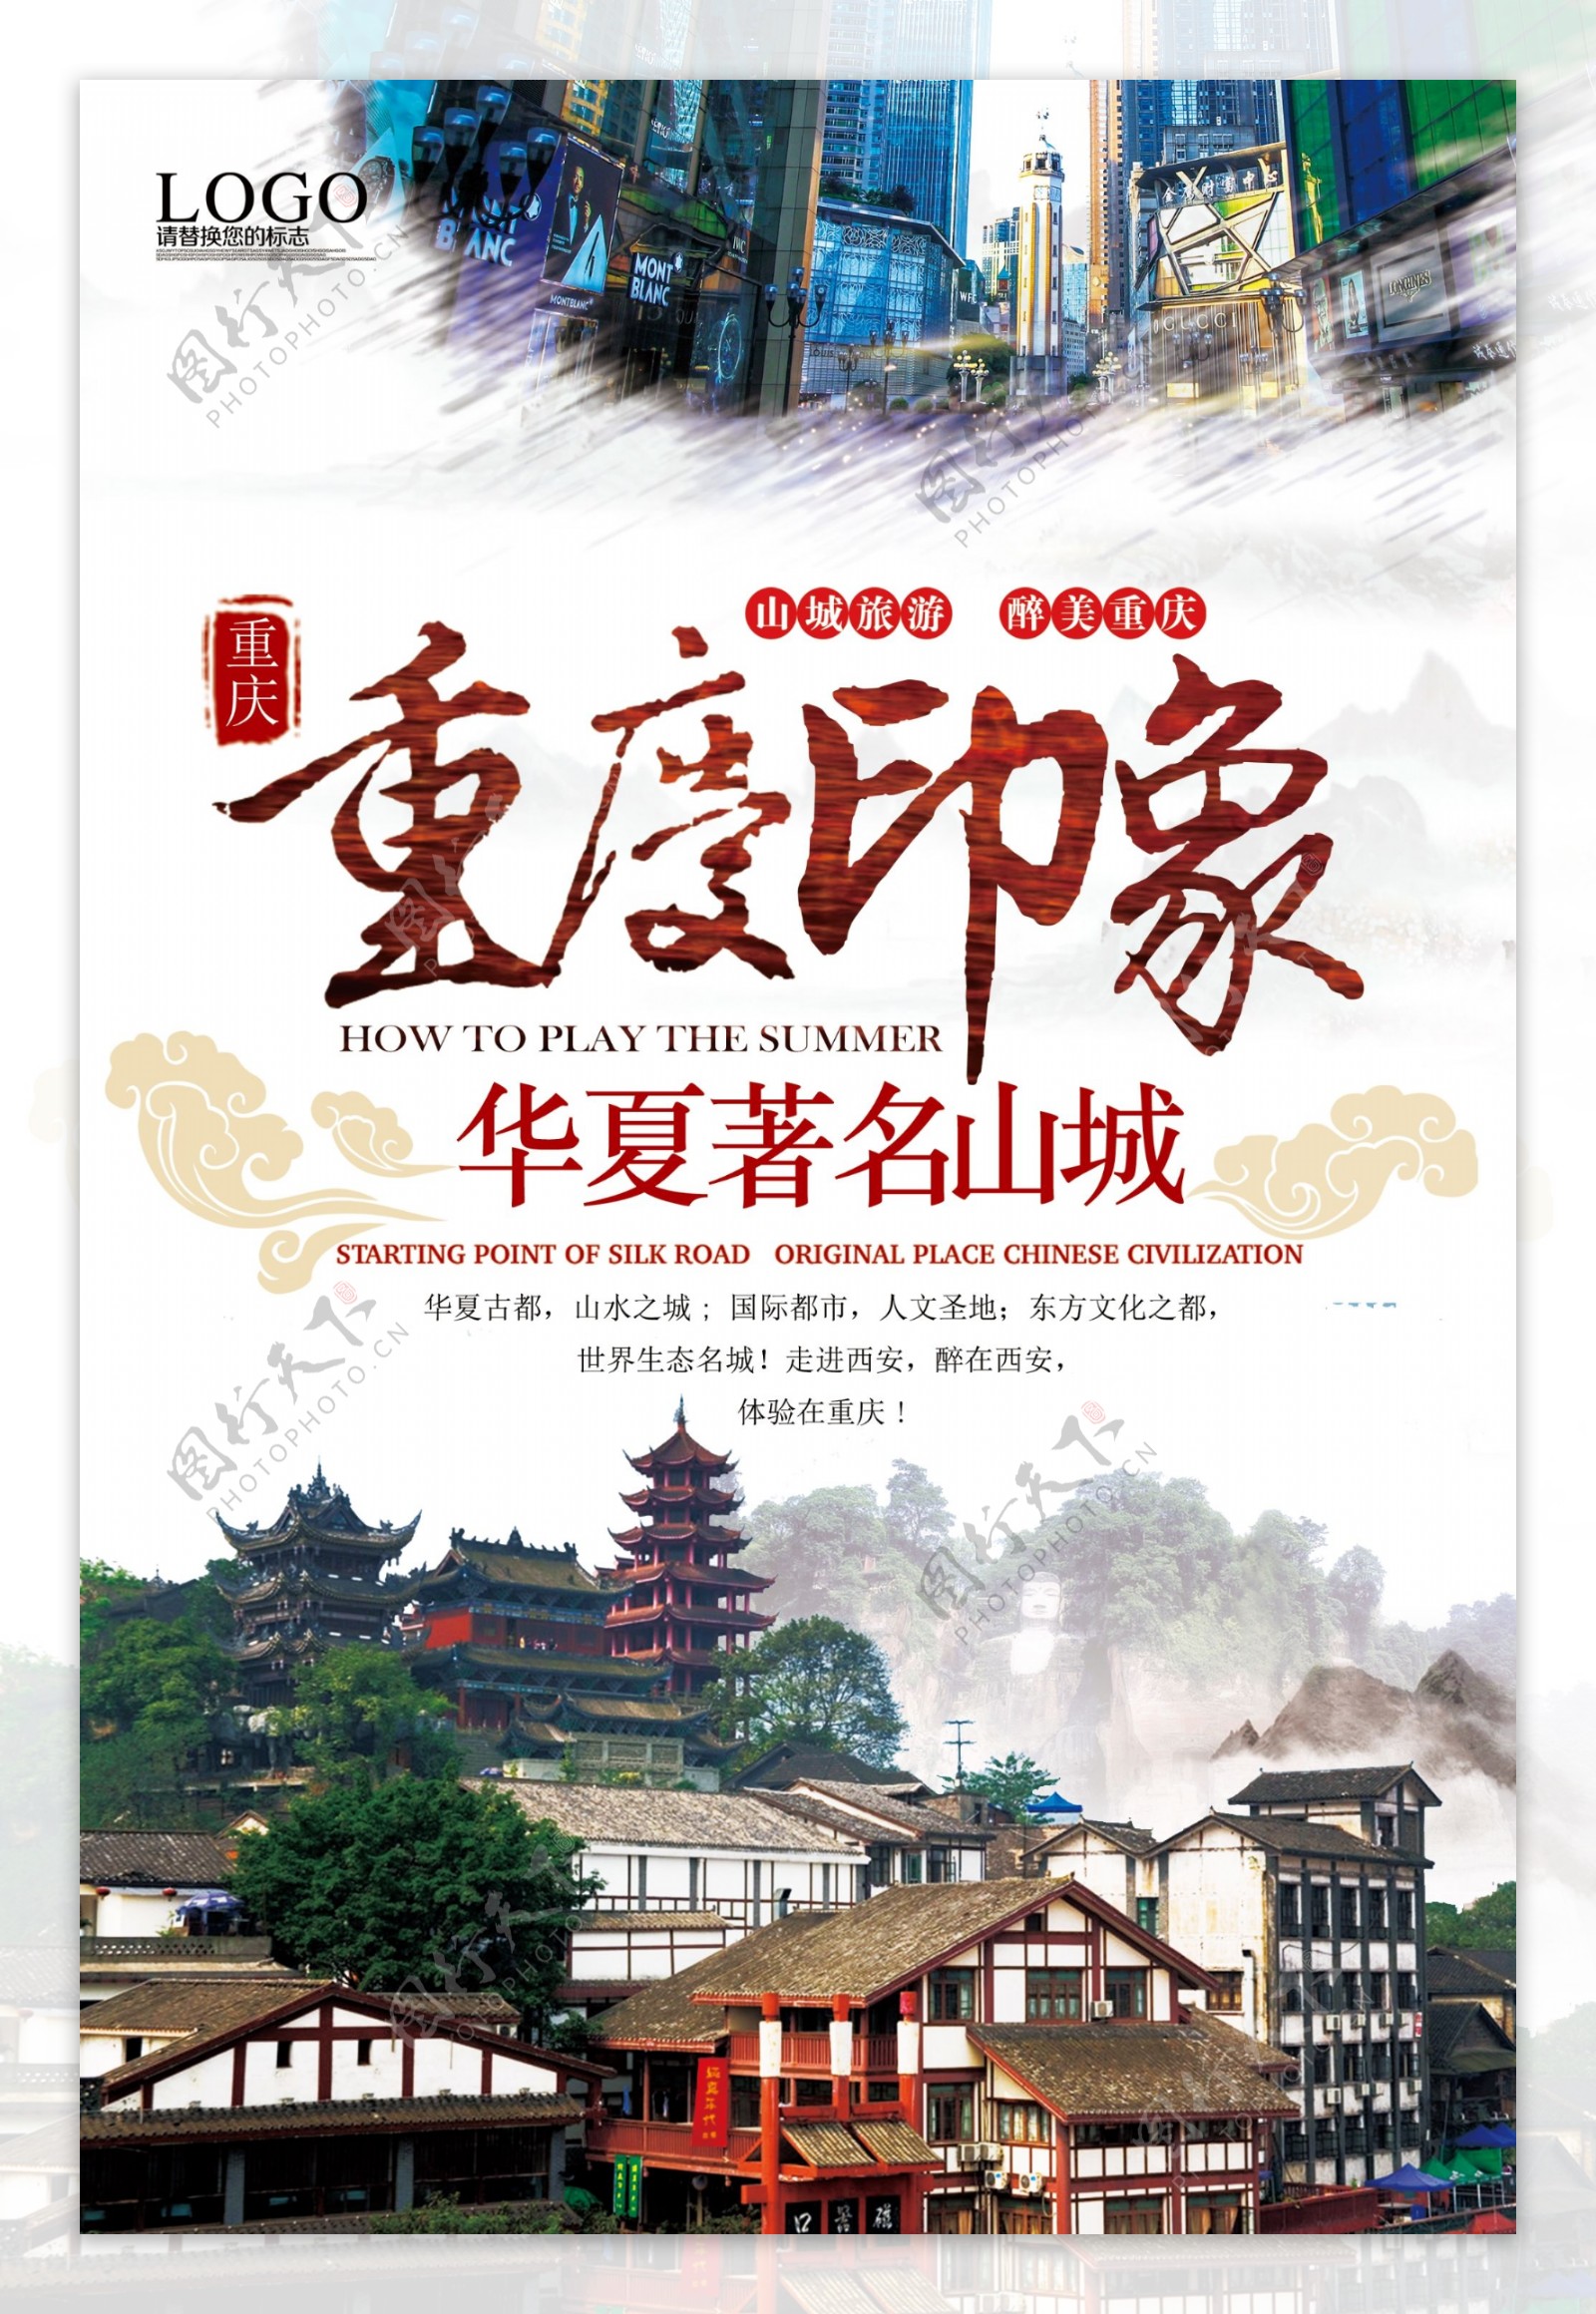 中国风重庆印象旅游宣传海报.psd